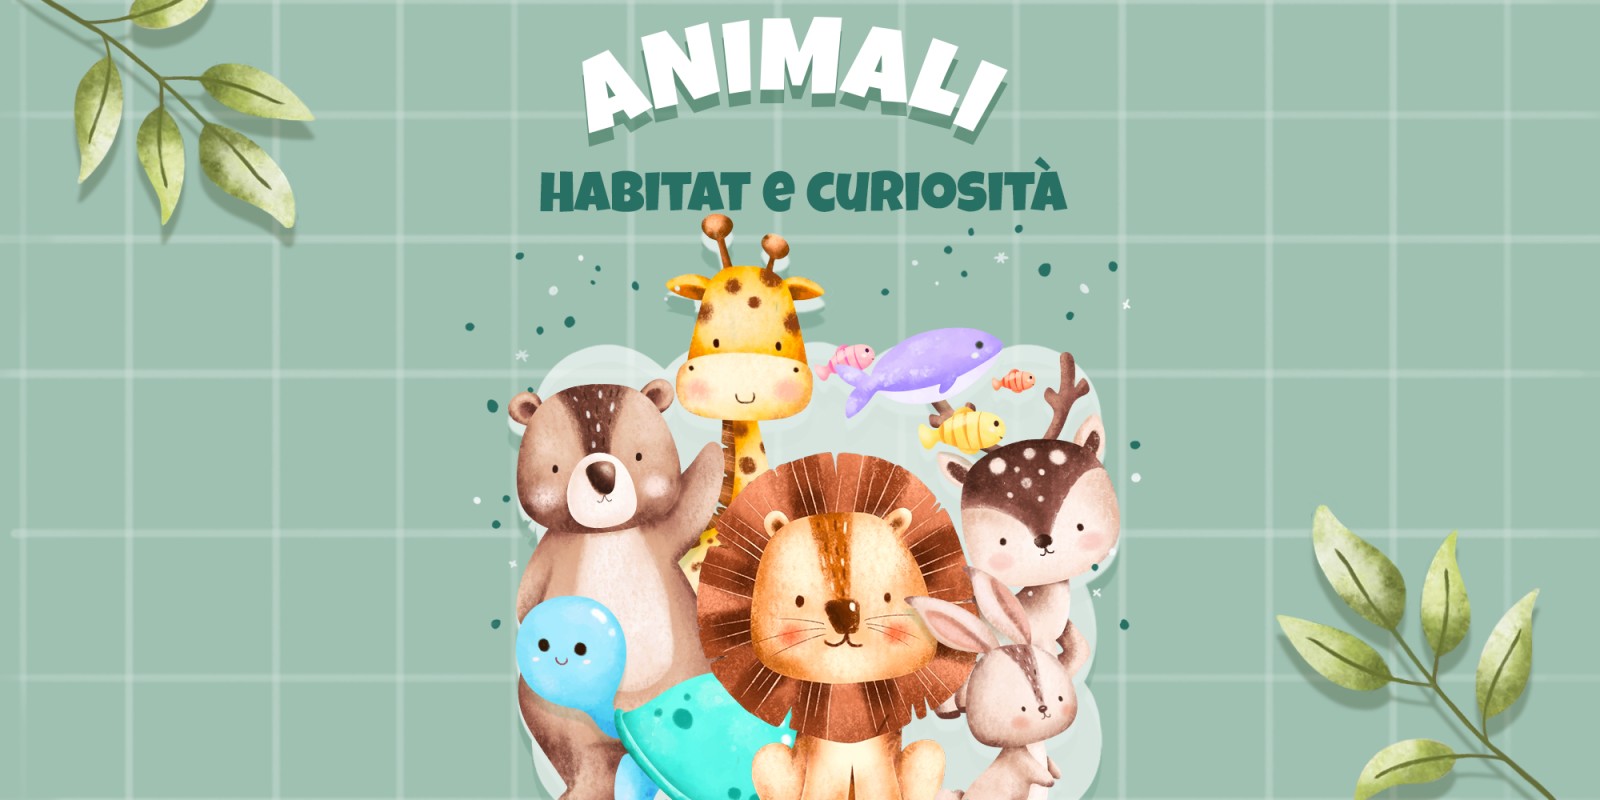 Animali - Habitat e curiosità